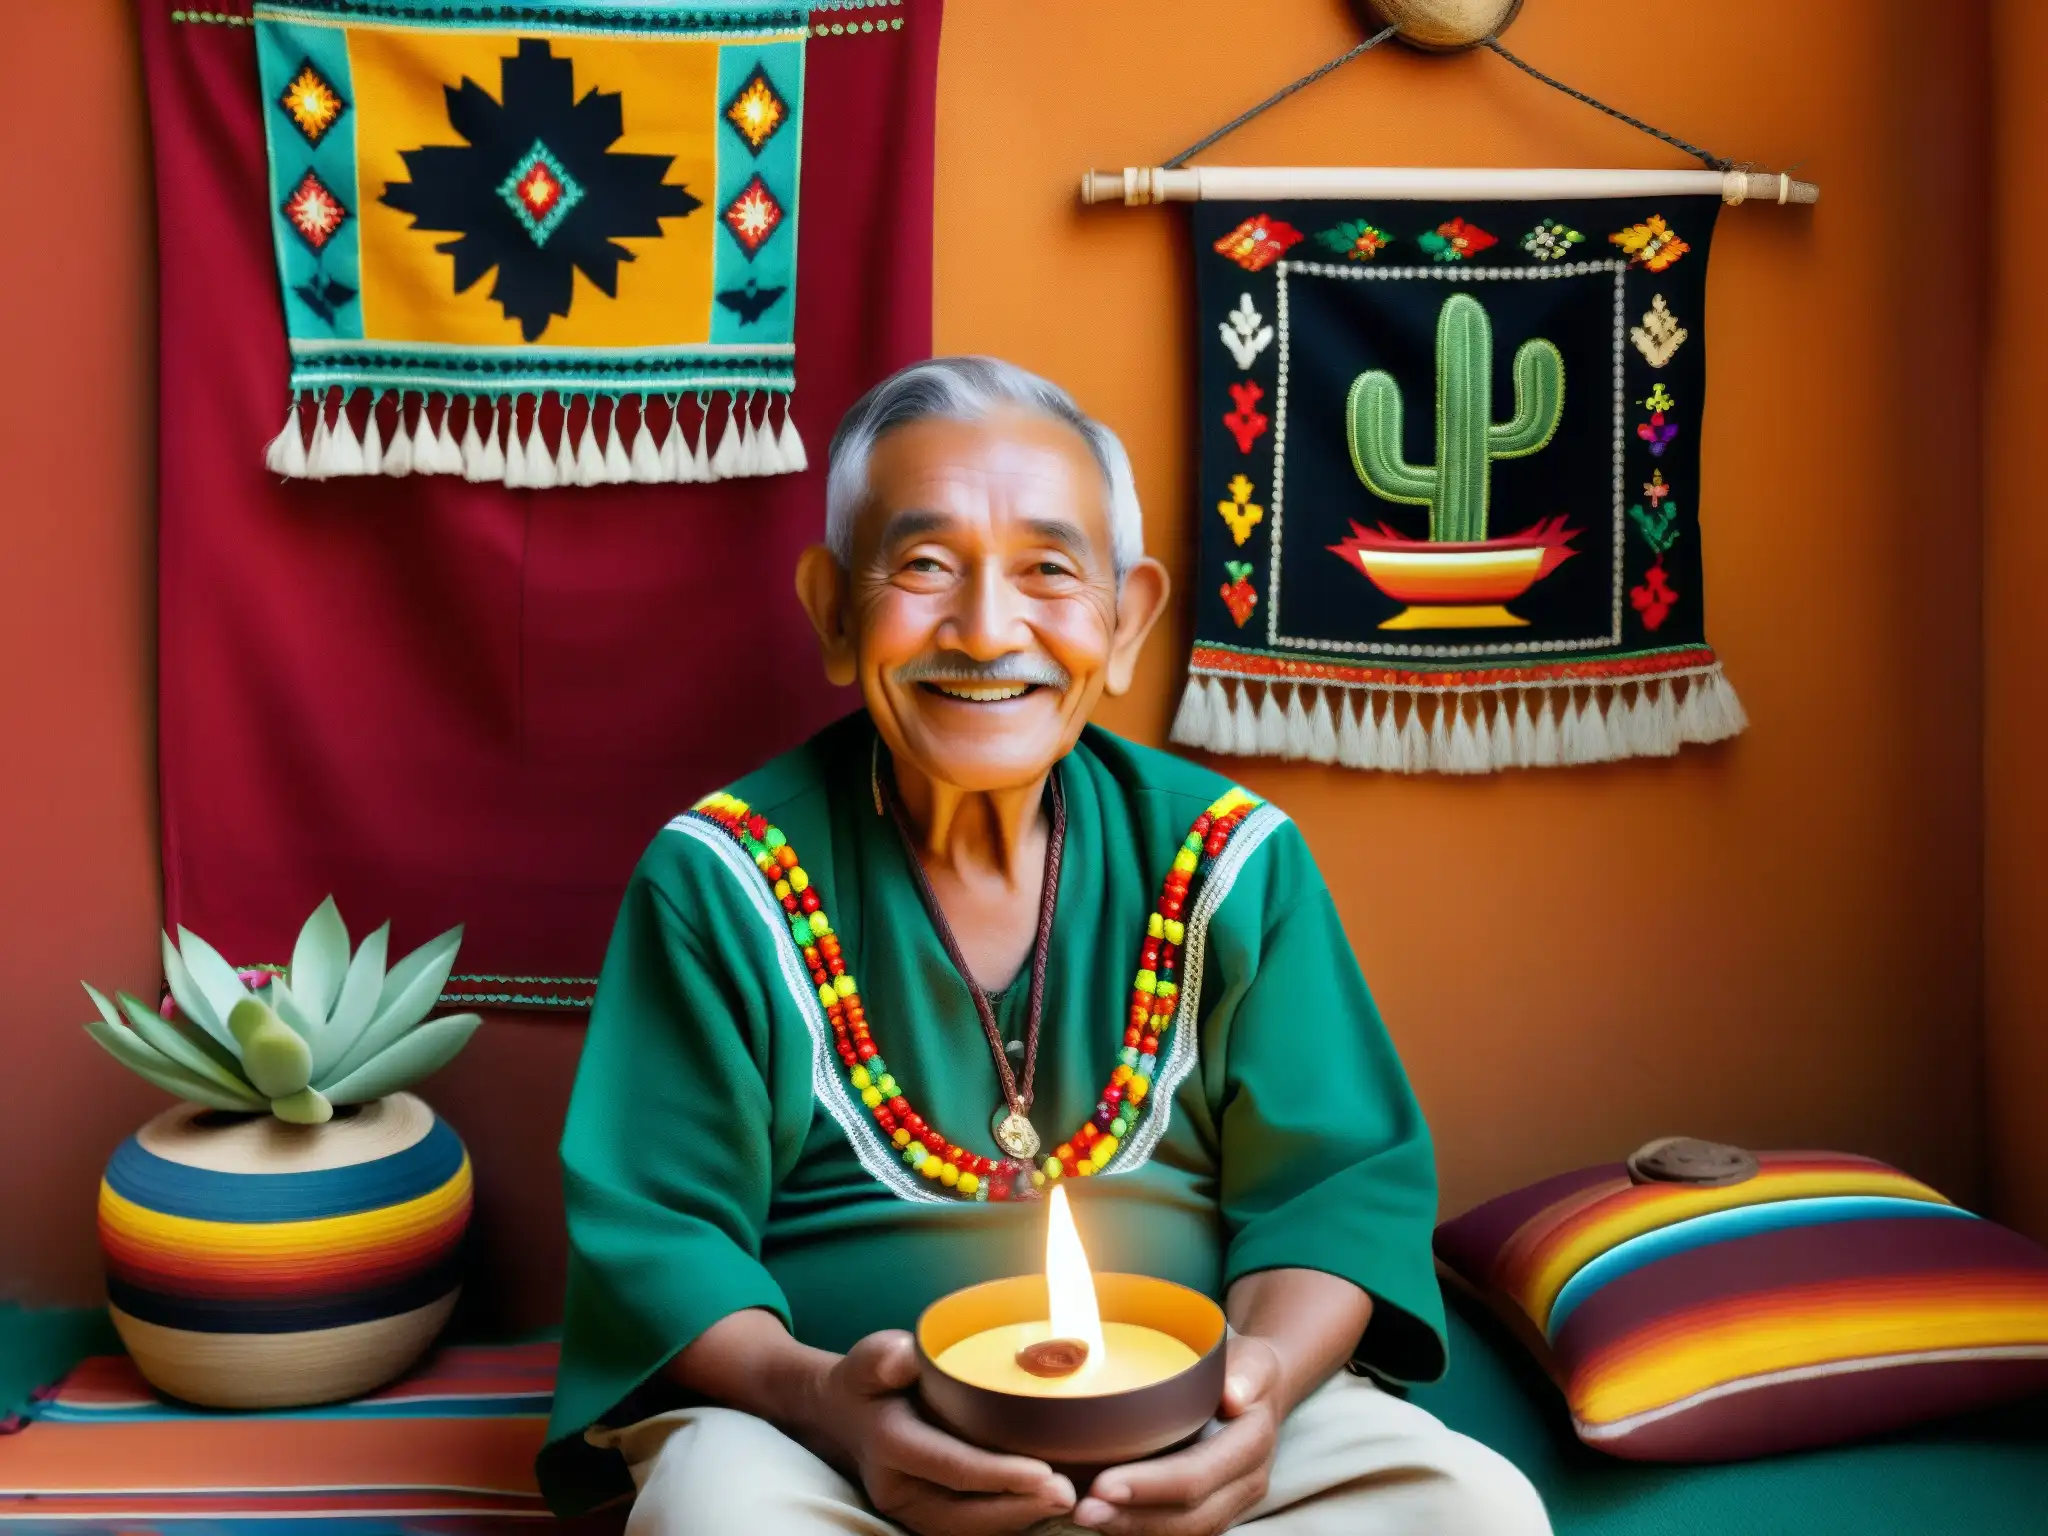 Un sabio hombre anciano medita en una habitación humilde iluminada por velas, rodeado de arte folclórico mexicano